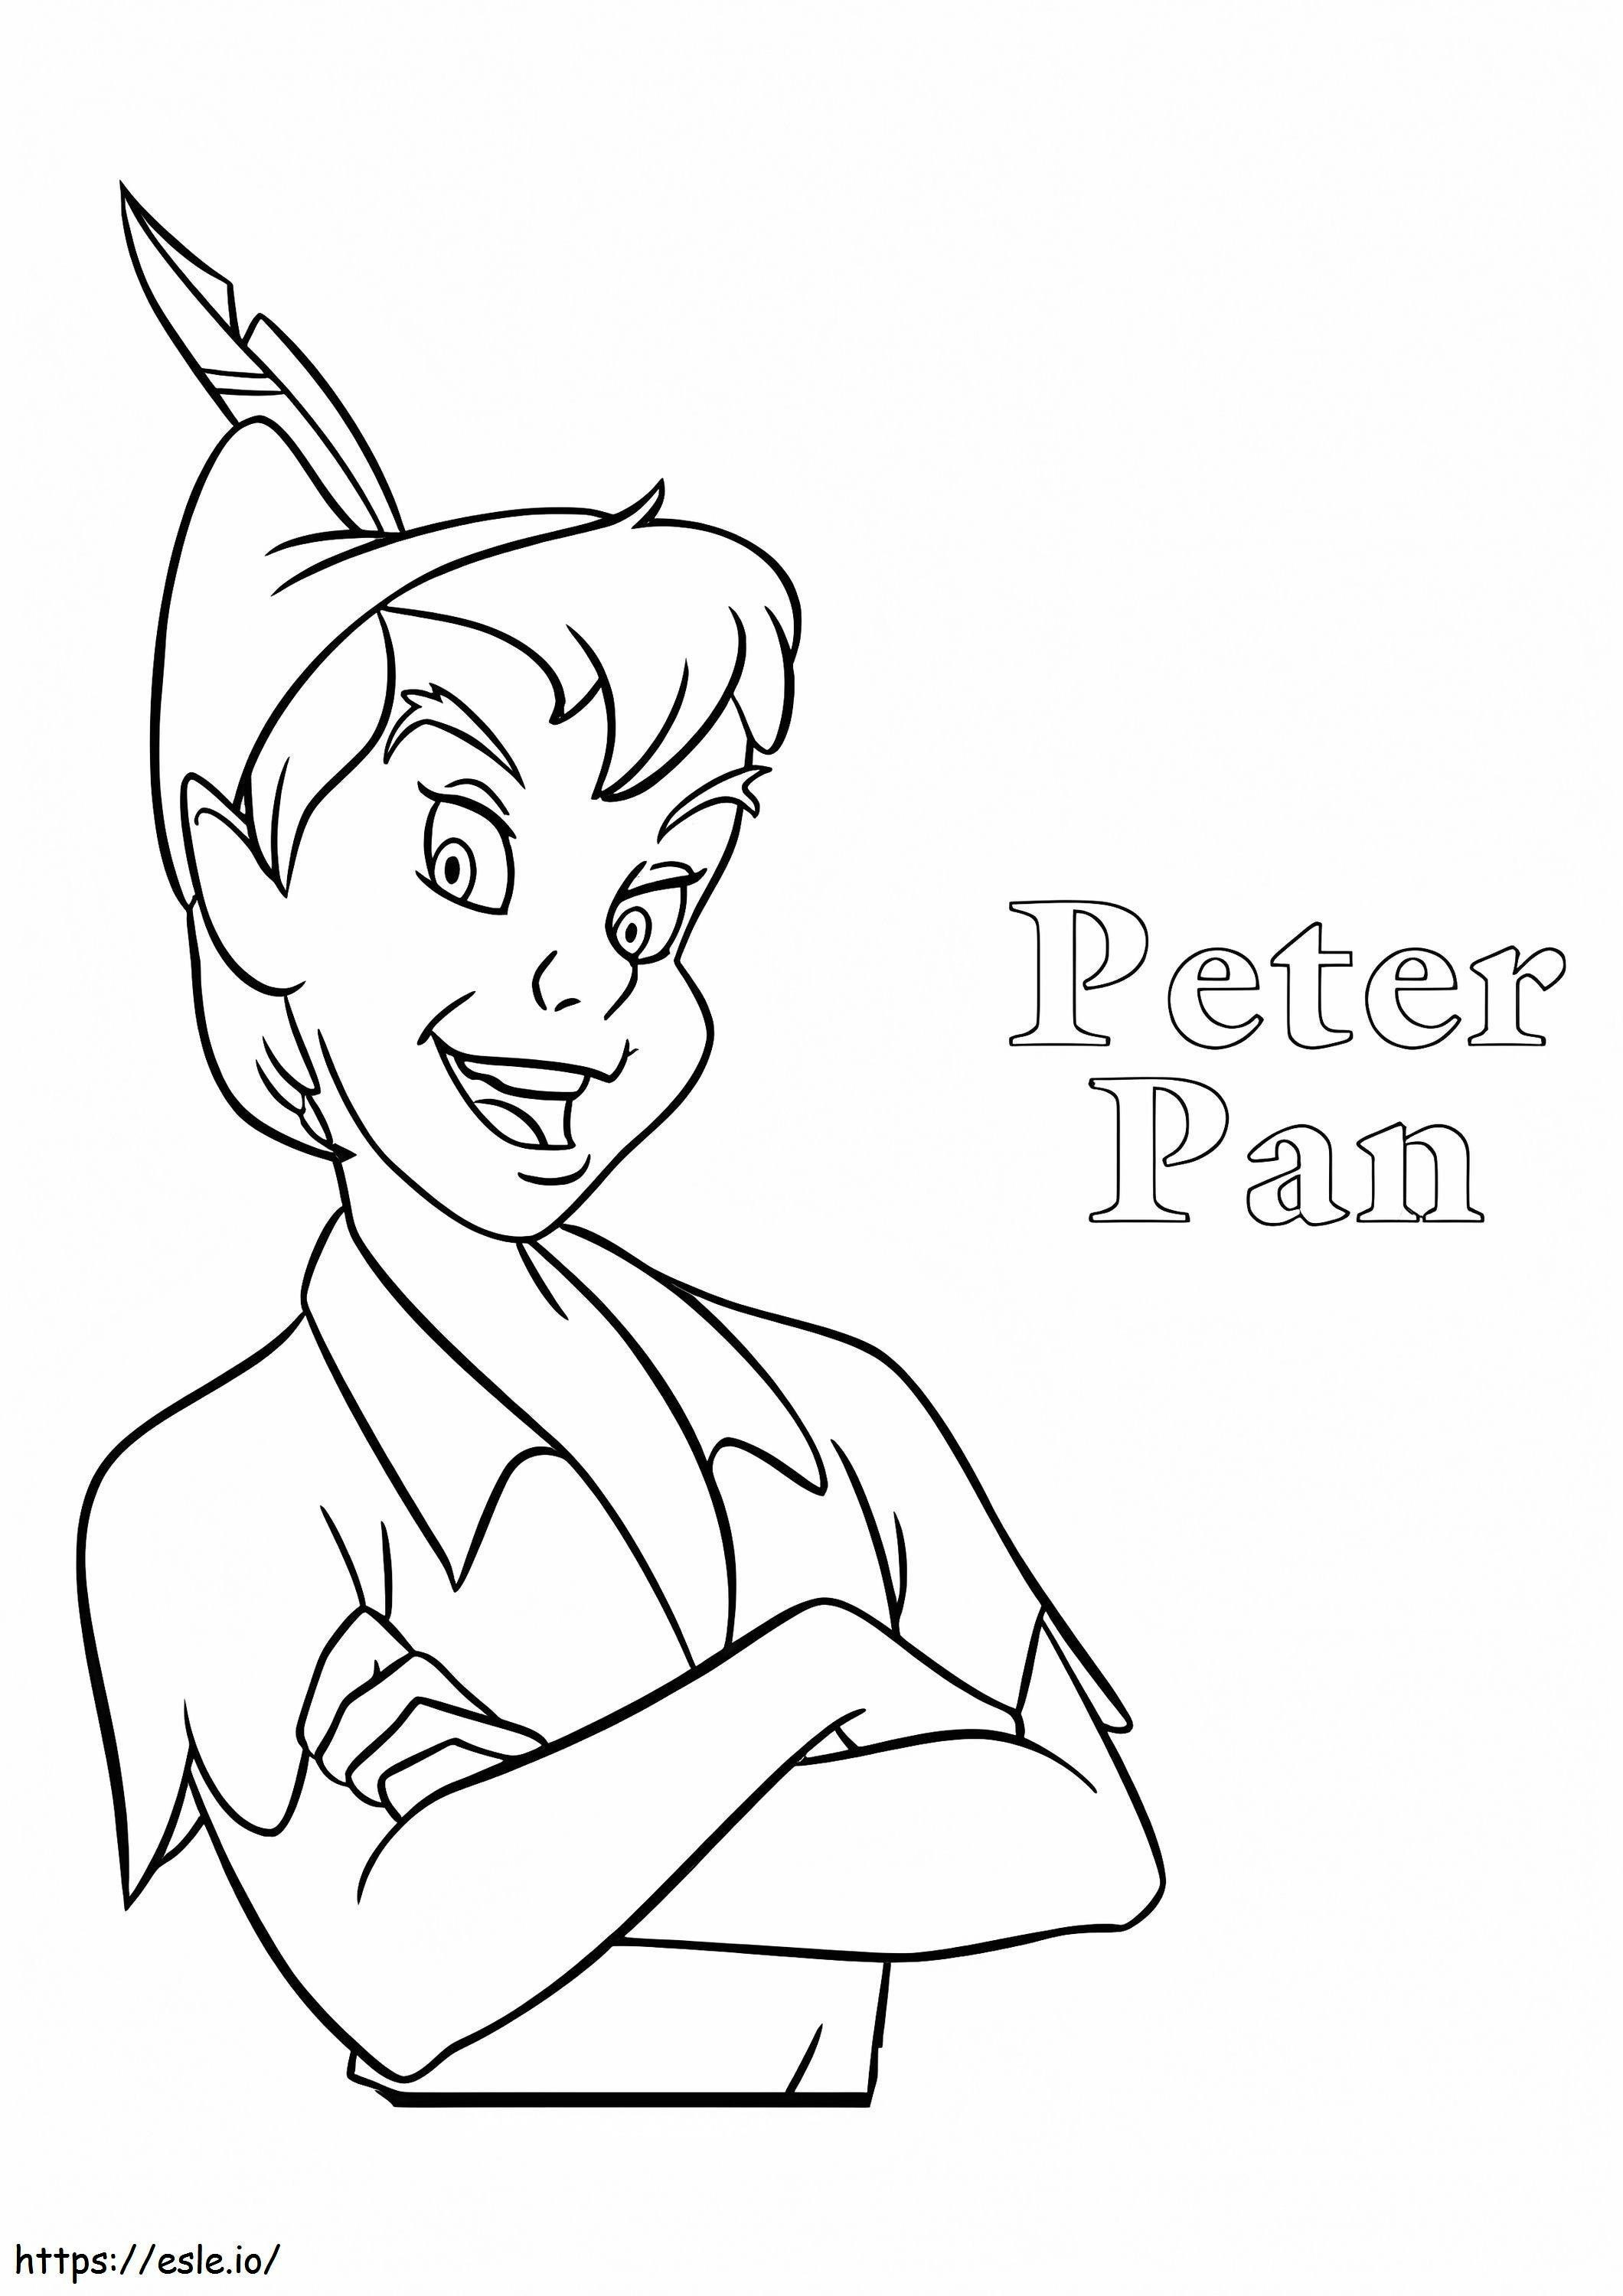 Peter Pan kleurplaat kleurplaat